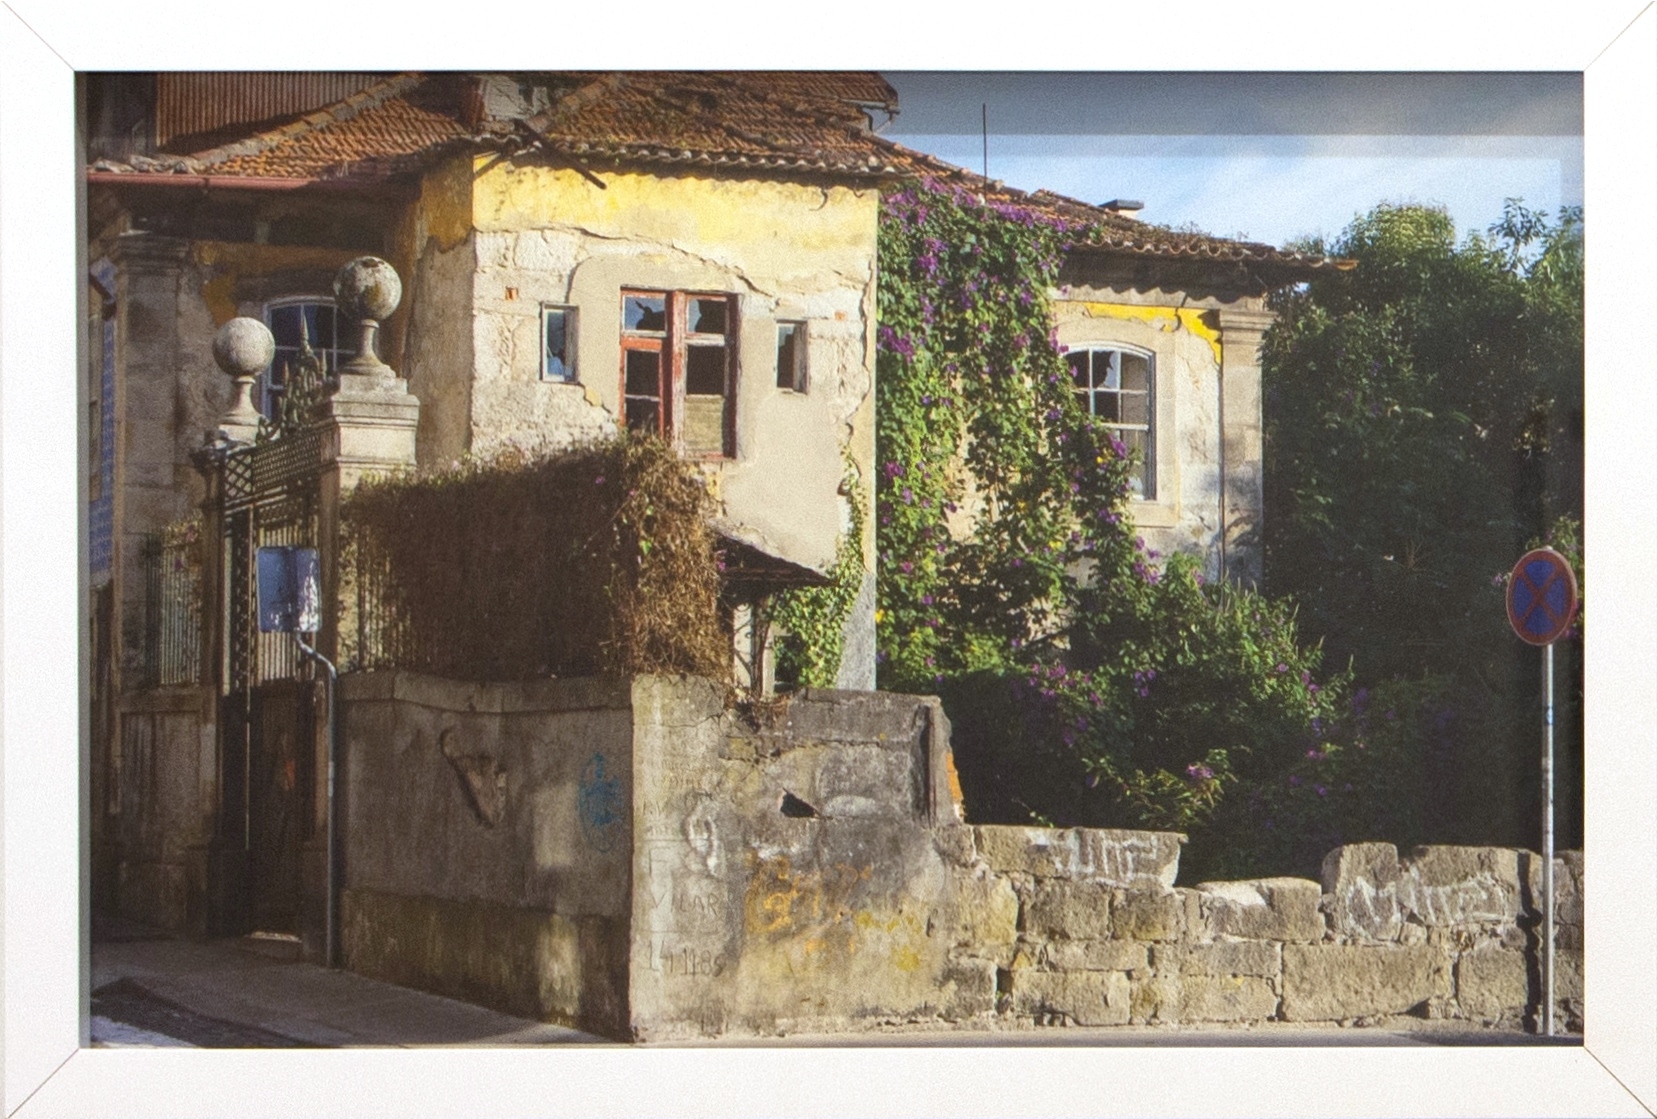 coleção-arquivo de casas que brotam, 2014-2016. Fotografia em cores, 43,5x29cm.